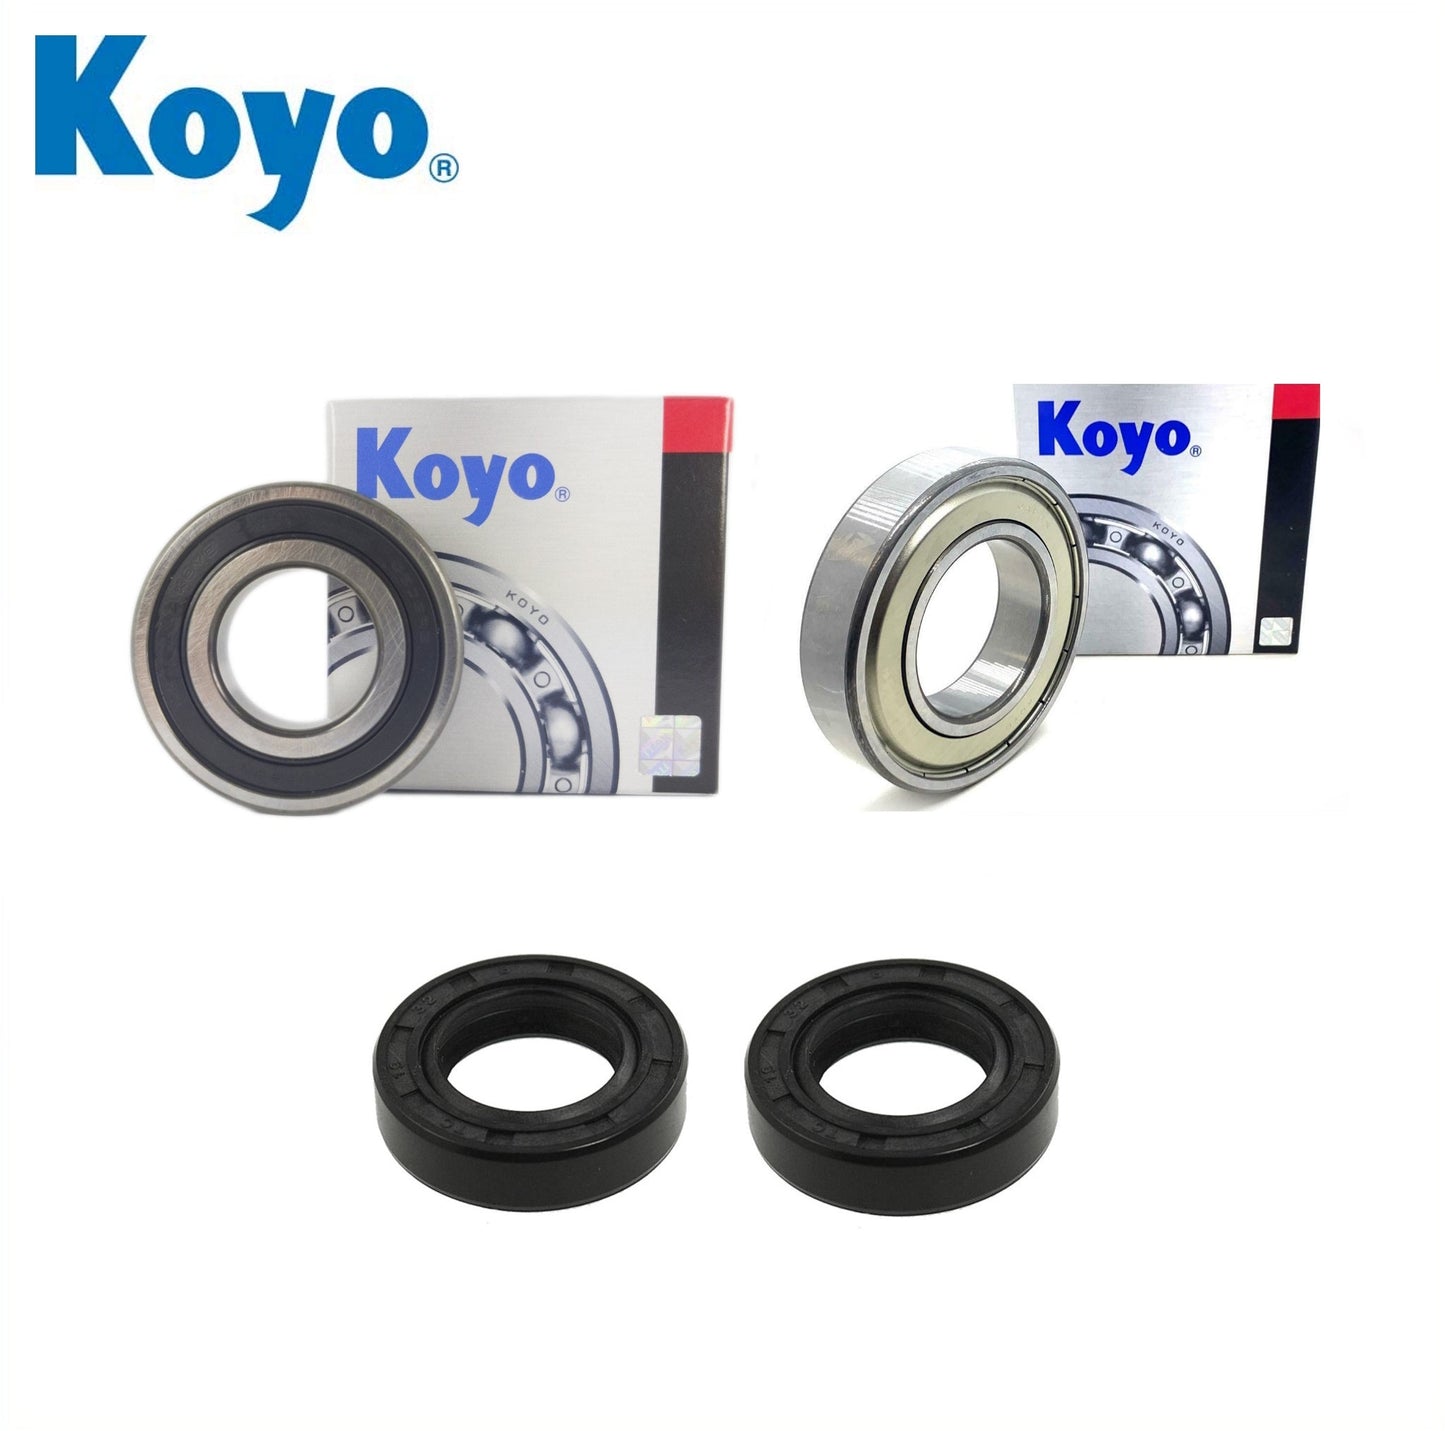 Yamaha YFM250 Moto 4 3GH4 999 C Front Wheel Bearing Kit with Koyo bearings